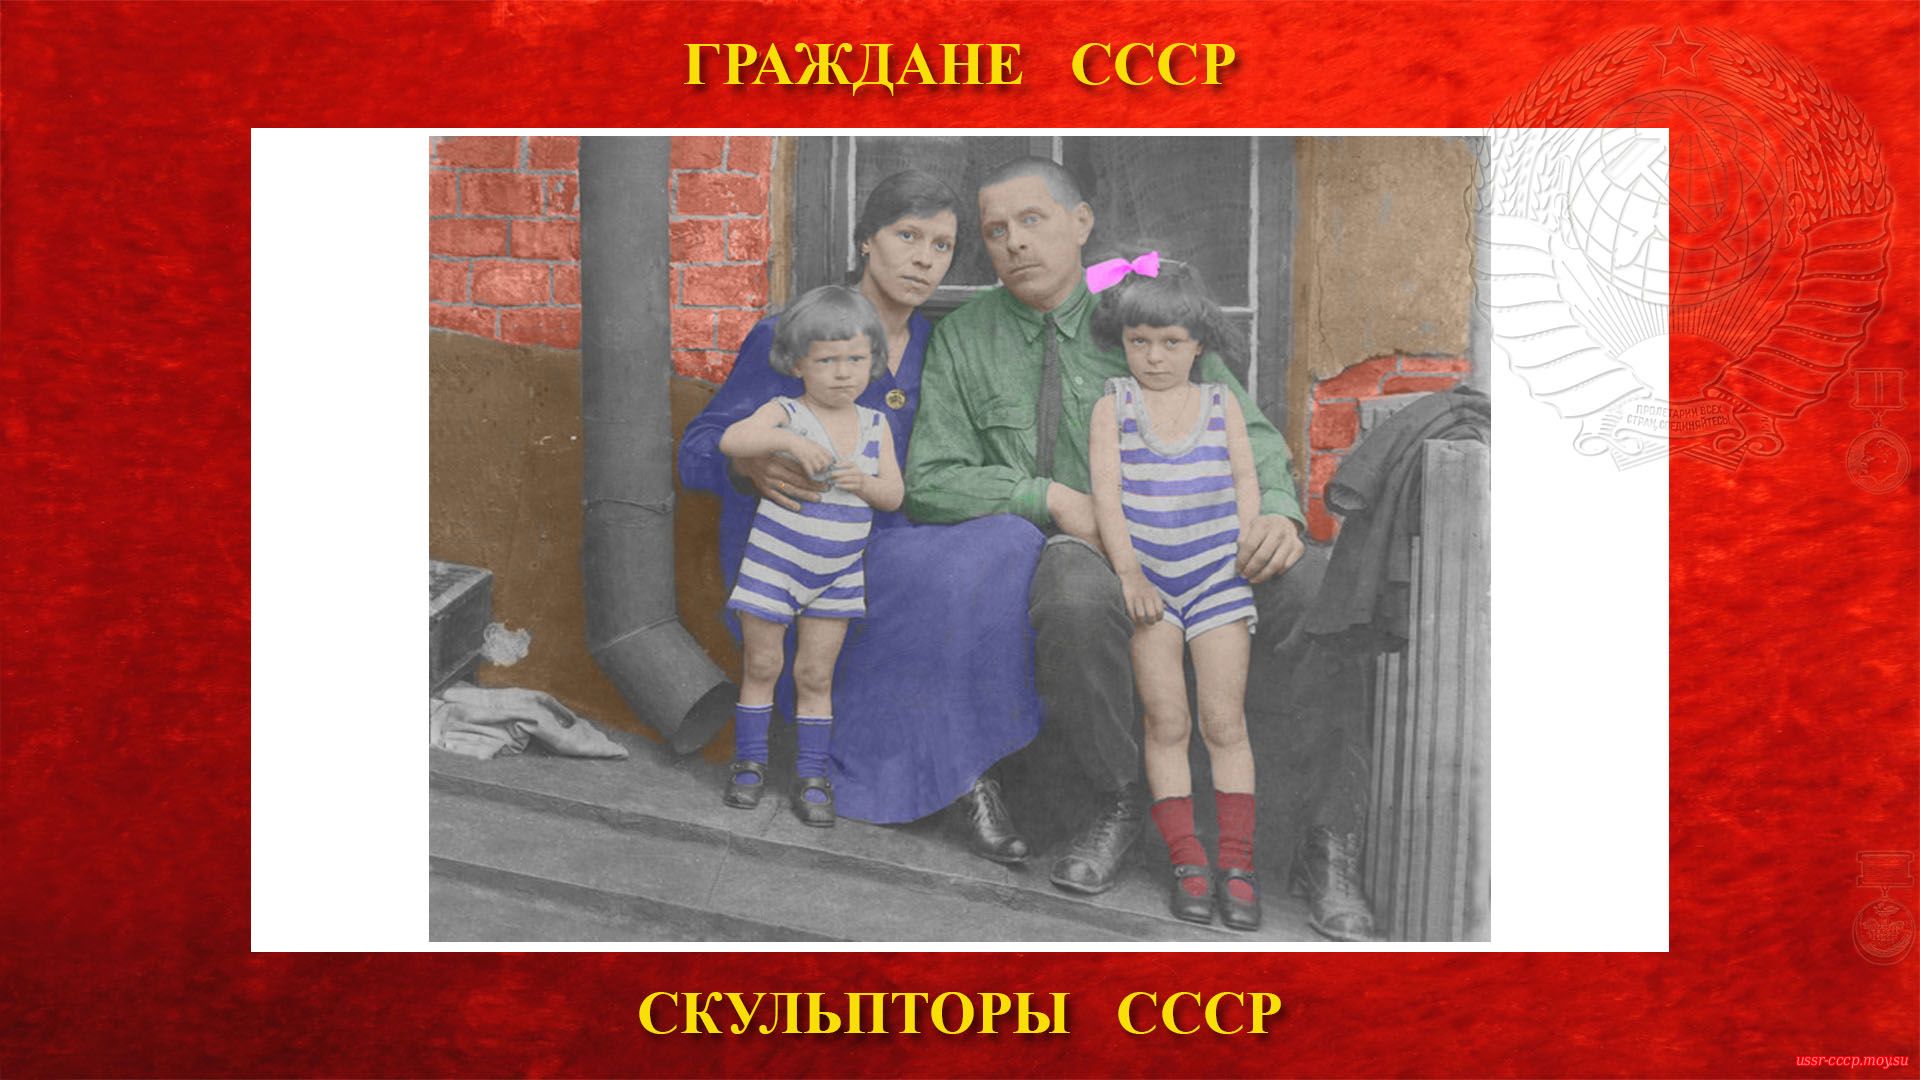 Слева на право: сын Володя Дыдыкин, жена Александра Михайловна Дыдыкина, Николай Васильевич Дыдыкин, и дочь Зоя Дыдыкина (Ленинград, 1926 год).